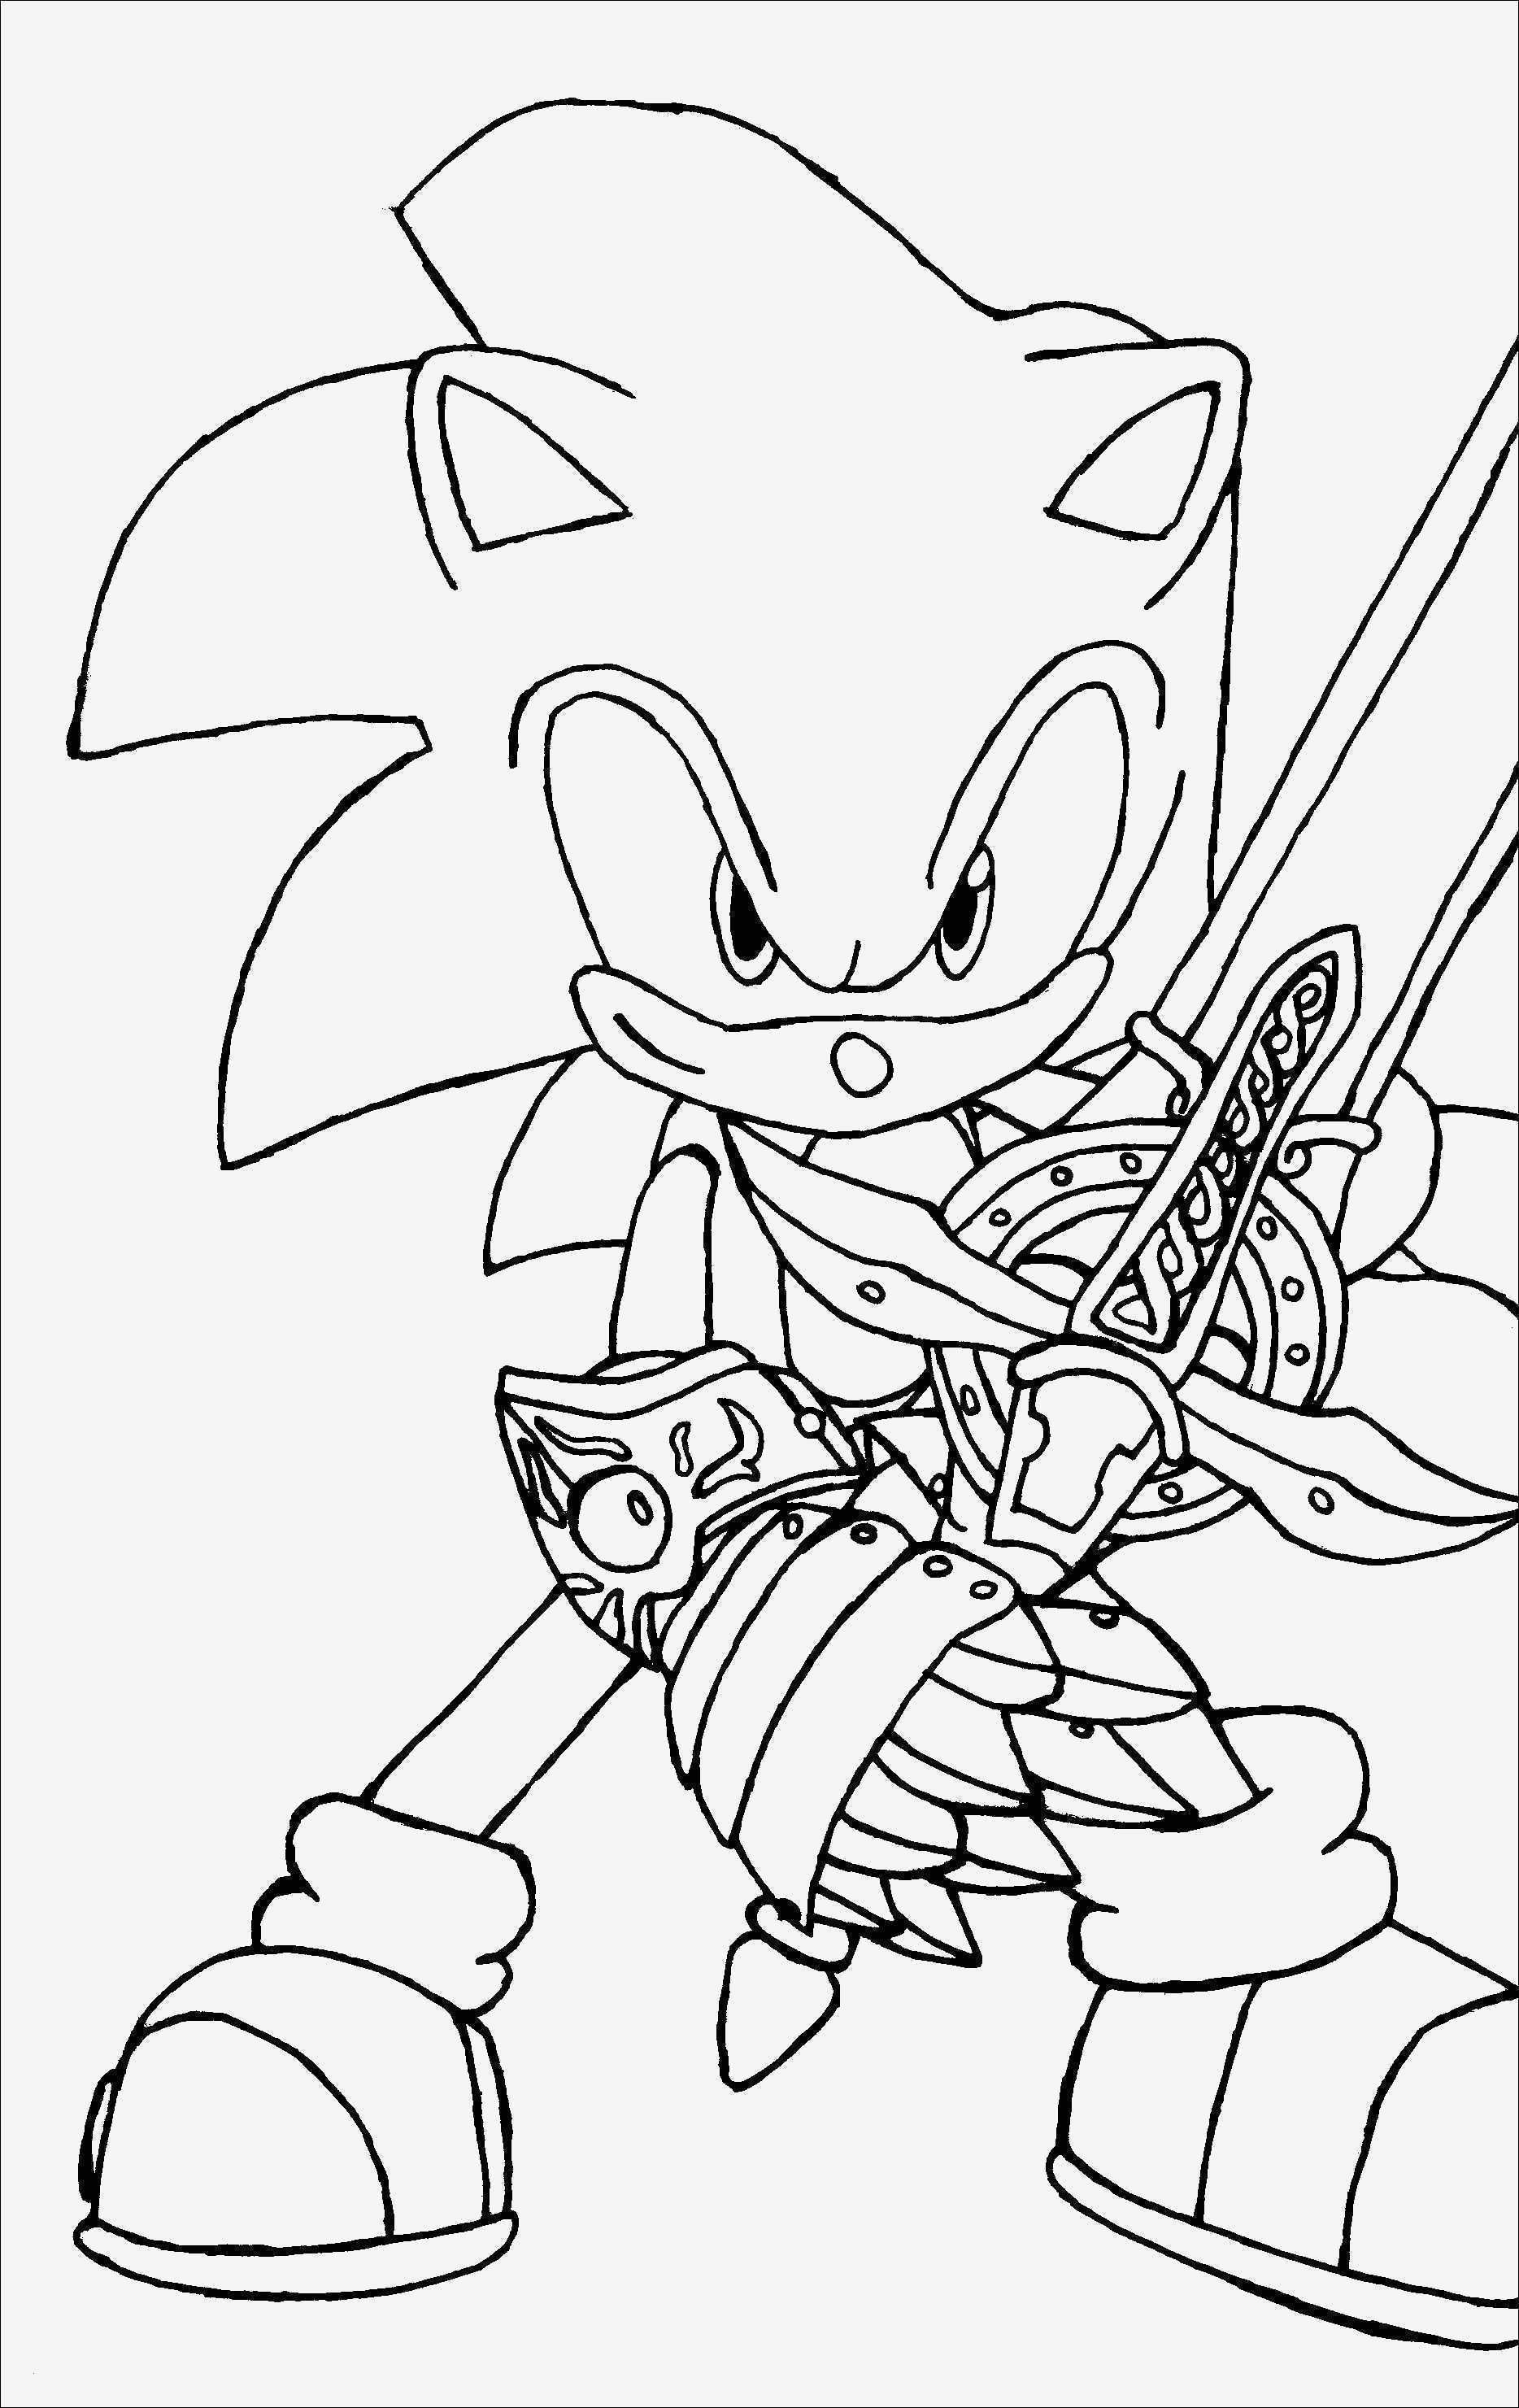 Sonic The Hedgehog Ausmalbilder
 Sonic Bilder Zum Ausmalen Aufnahme – Ausmalbilder Ideen